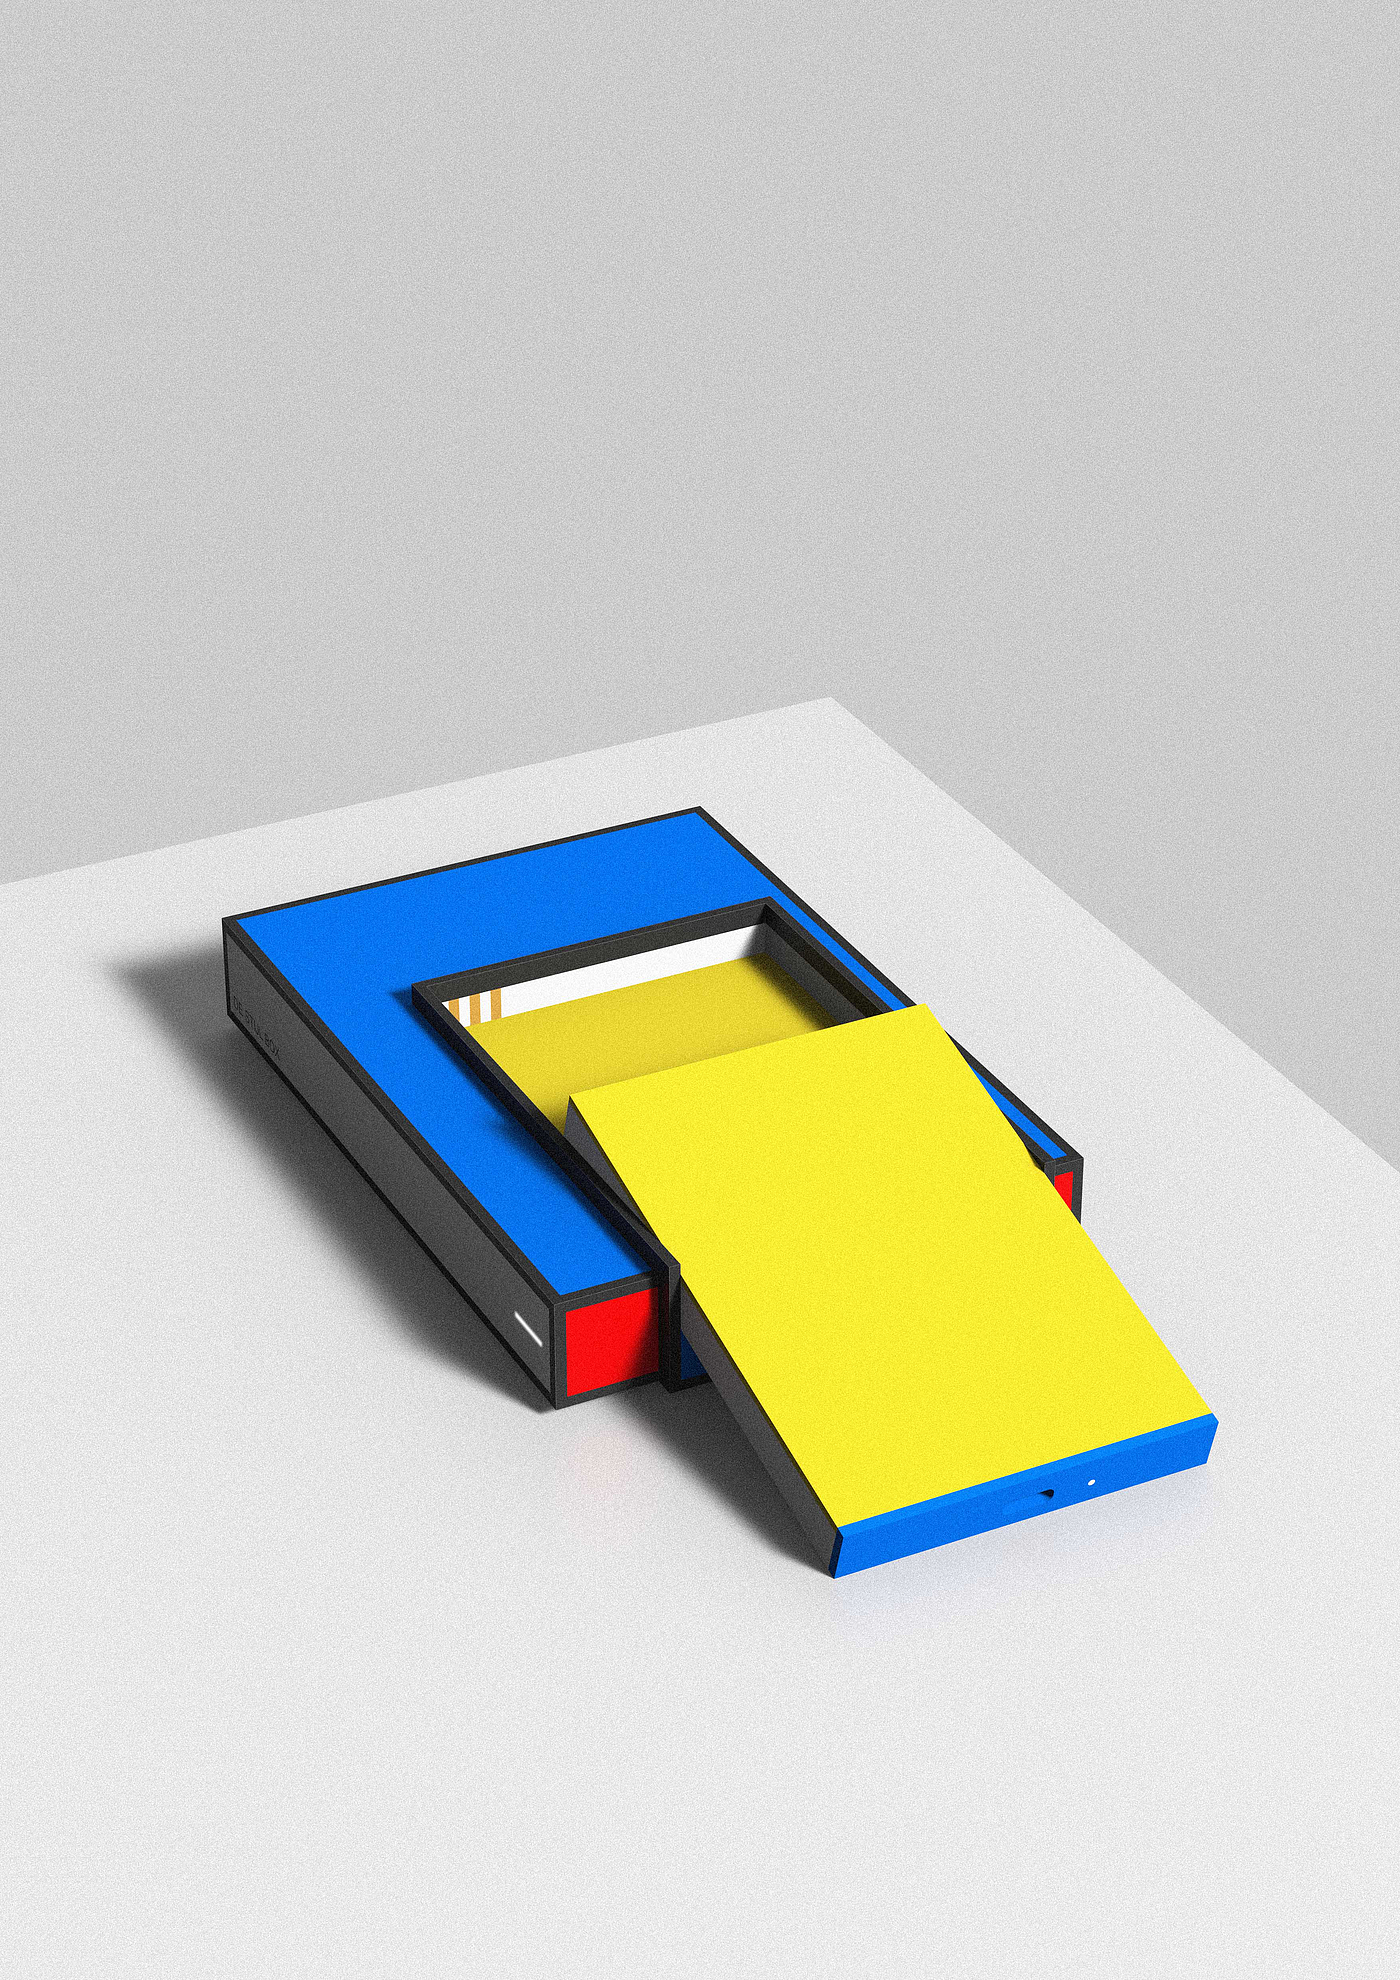 机顶盒，盒子，硬盘，蒙德里安，风格派，红黄蓝，方块，简洁，